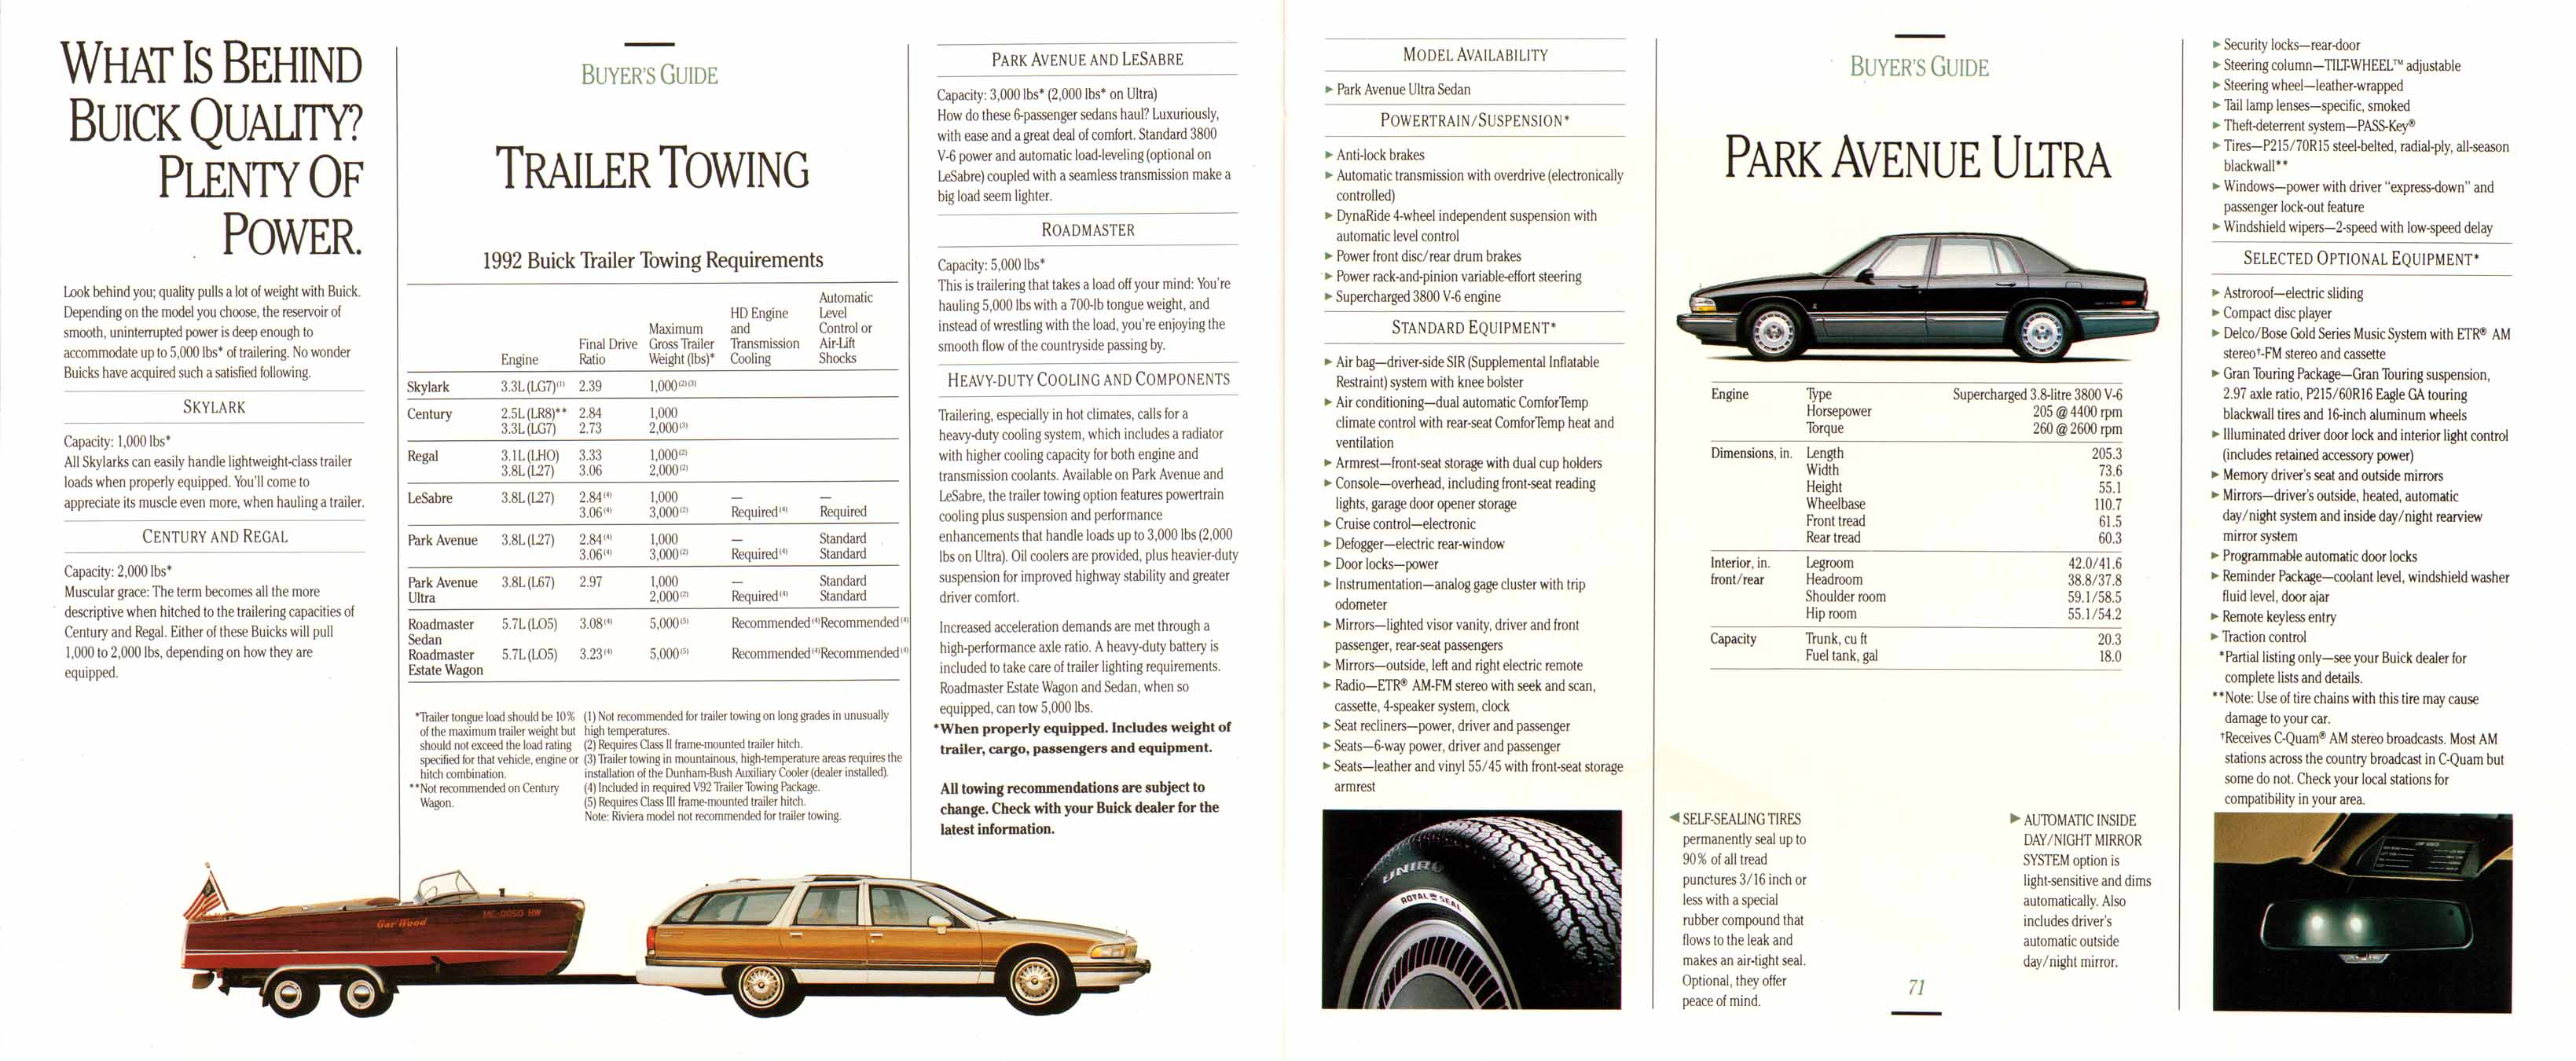 1992 Buick Full Line Prestige-70-71